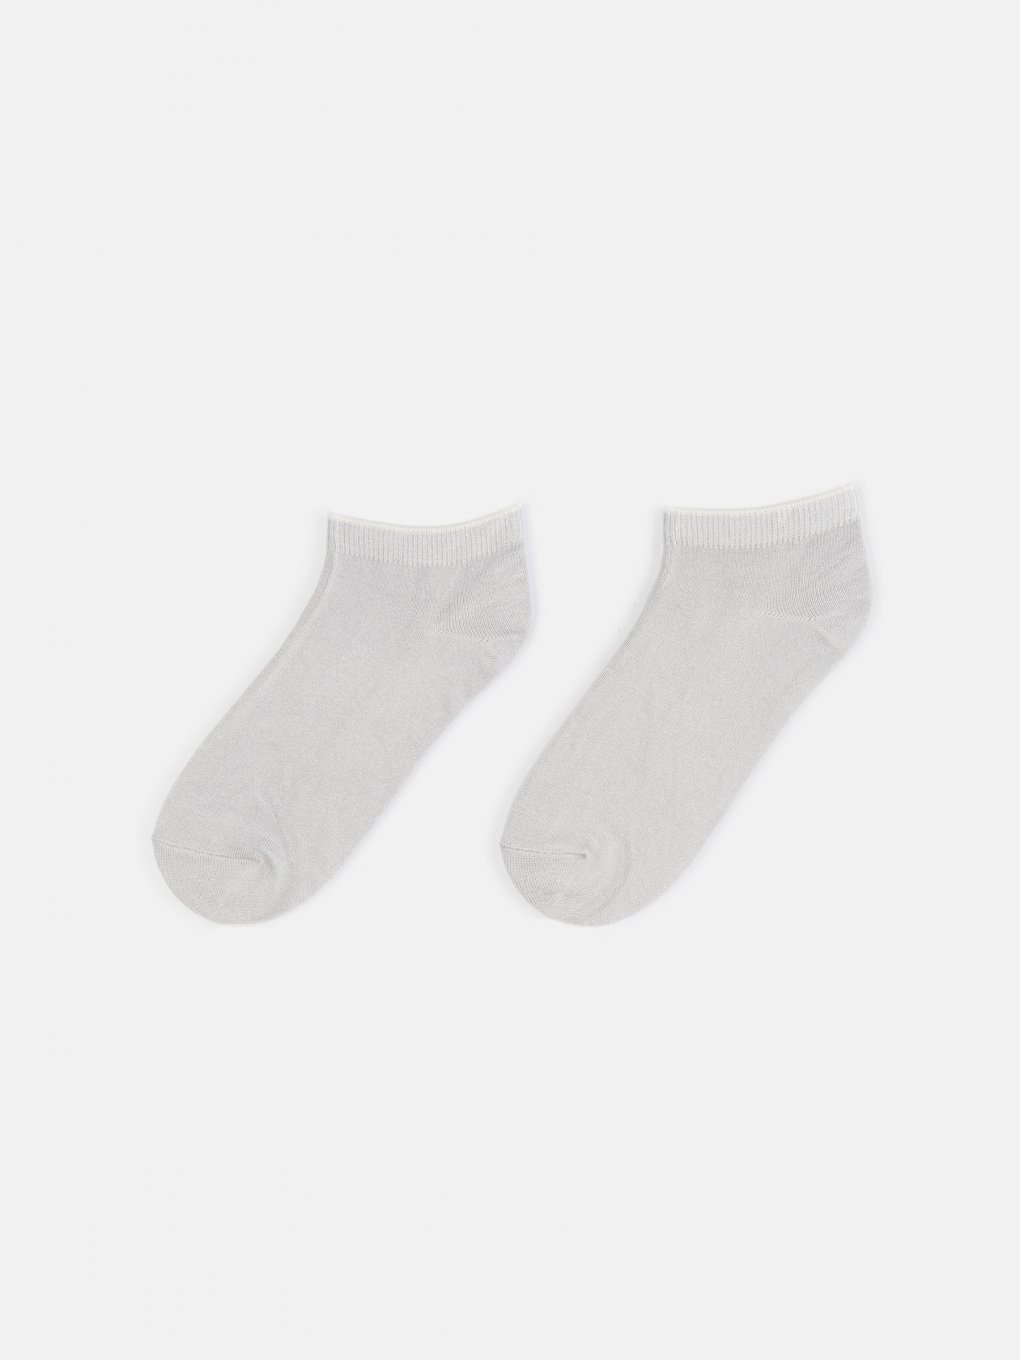 Dva páry viskózových kotníkových ponožek